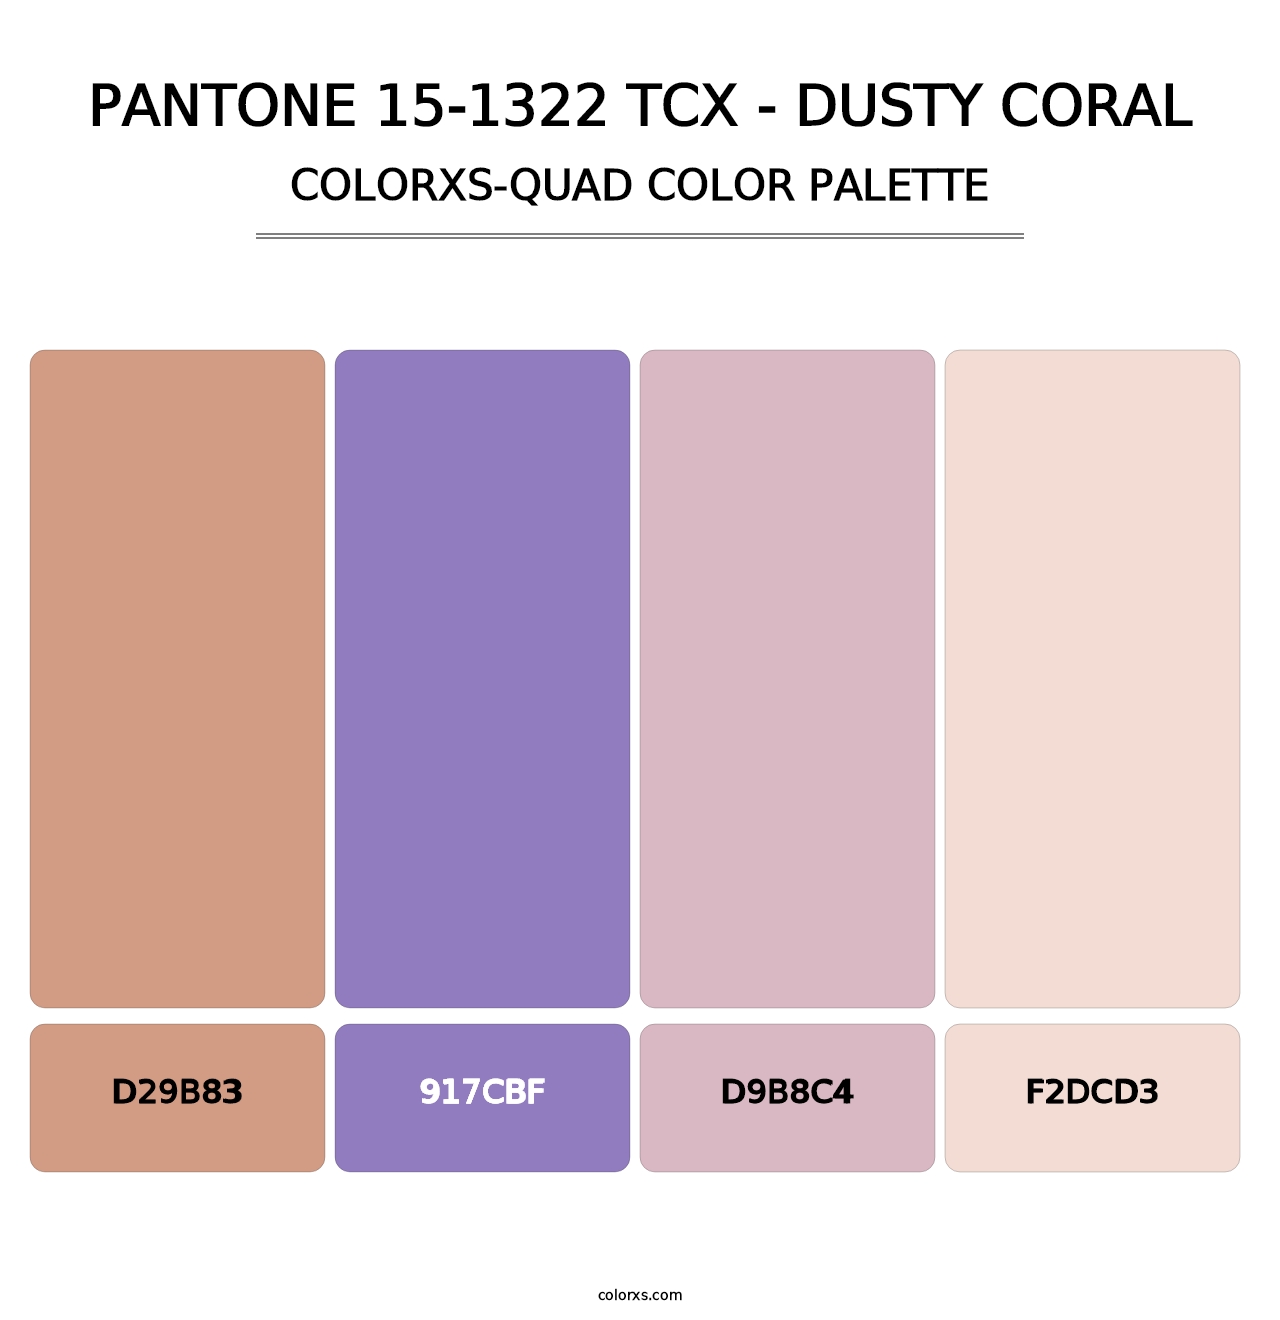 PANTONE 15-1322 TCX - Dusty Coral - Colorxs Quad Palette